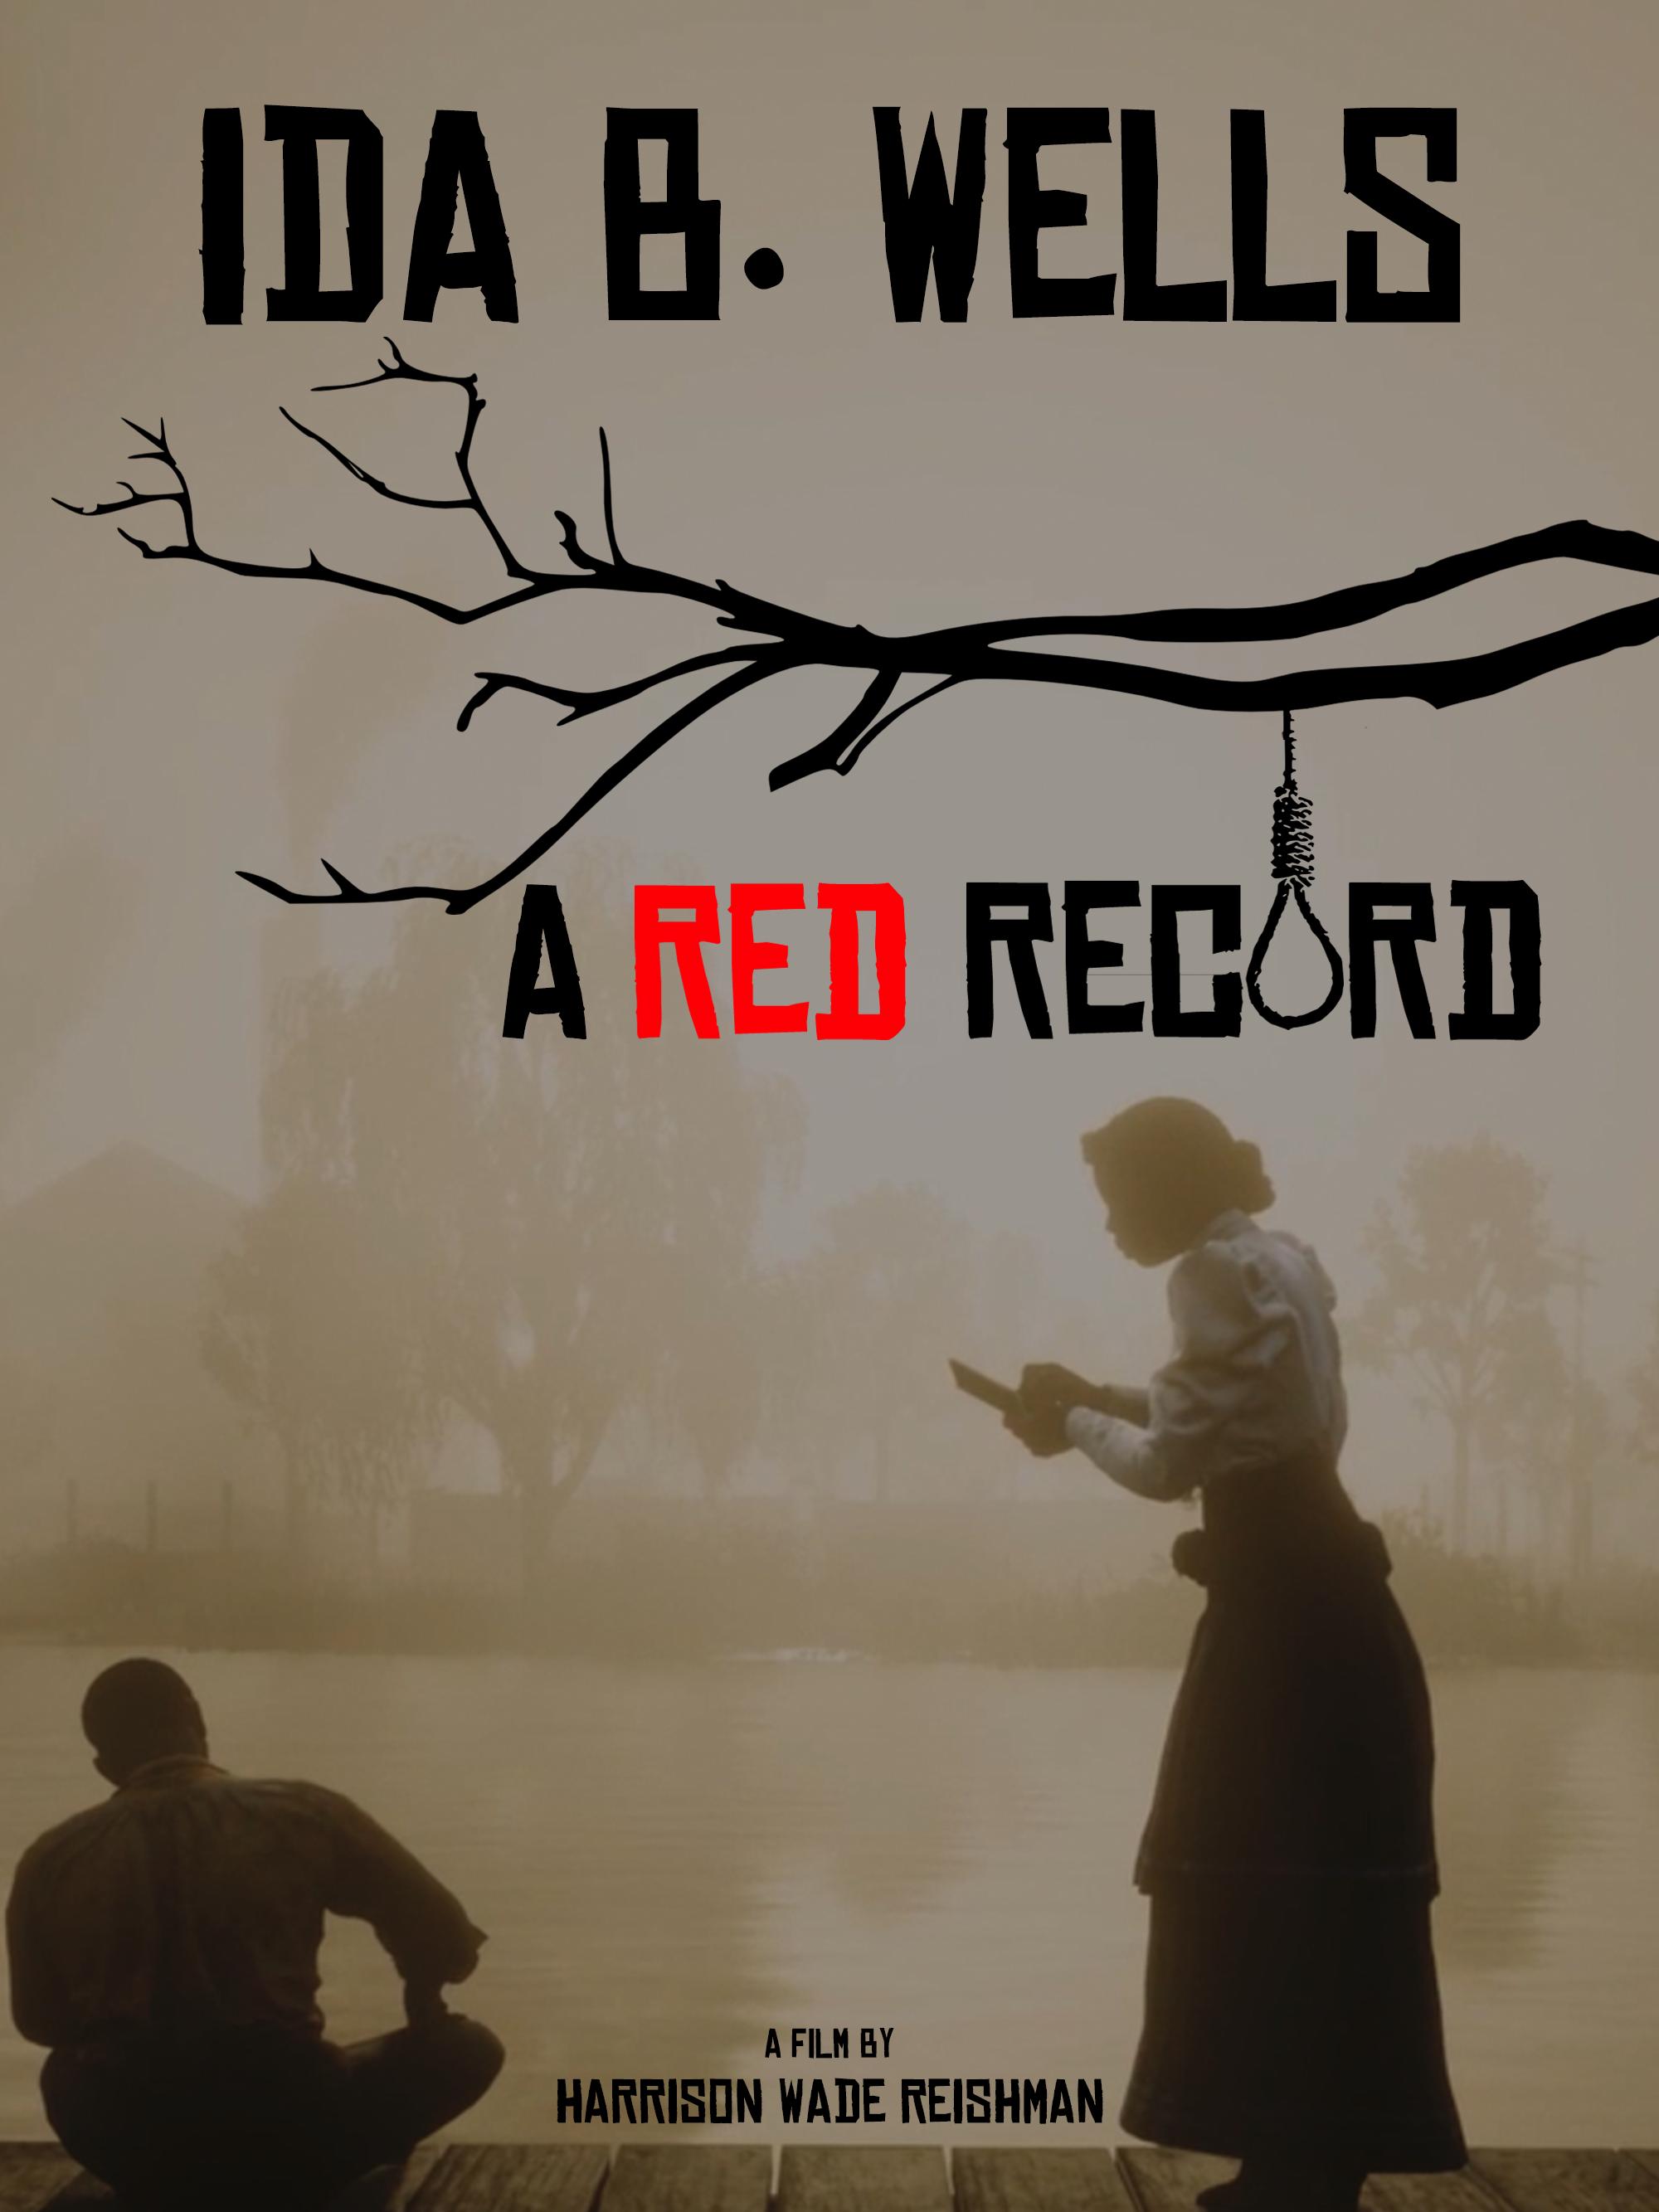 Ida B. Wells: A Red Record (2020)